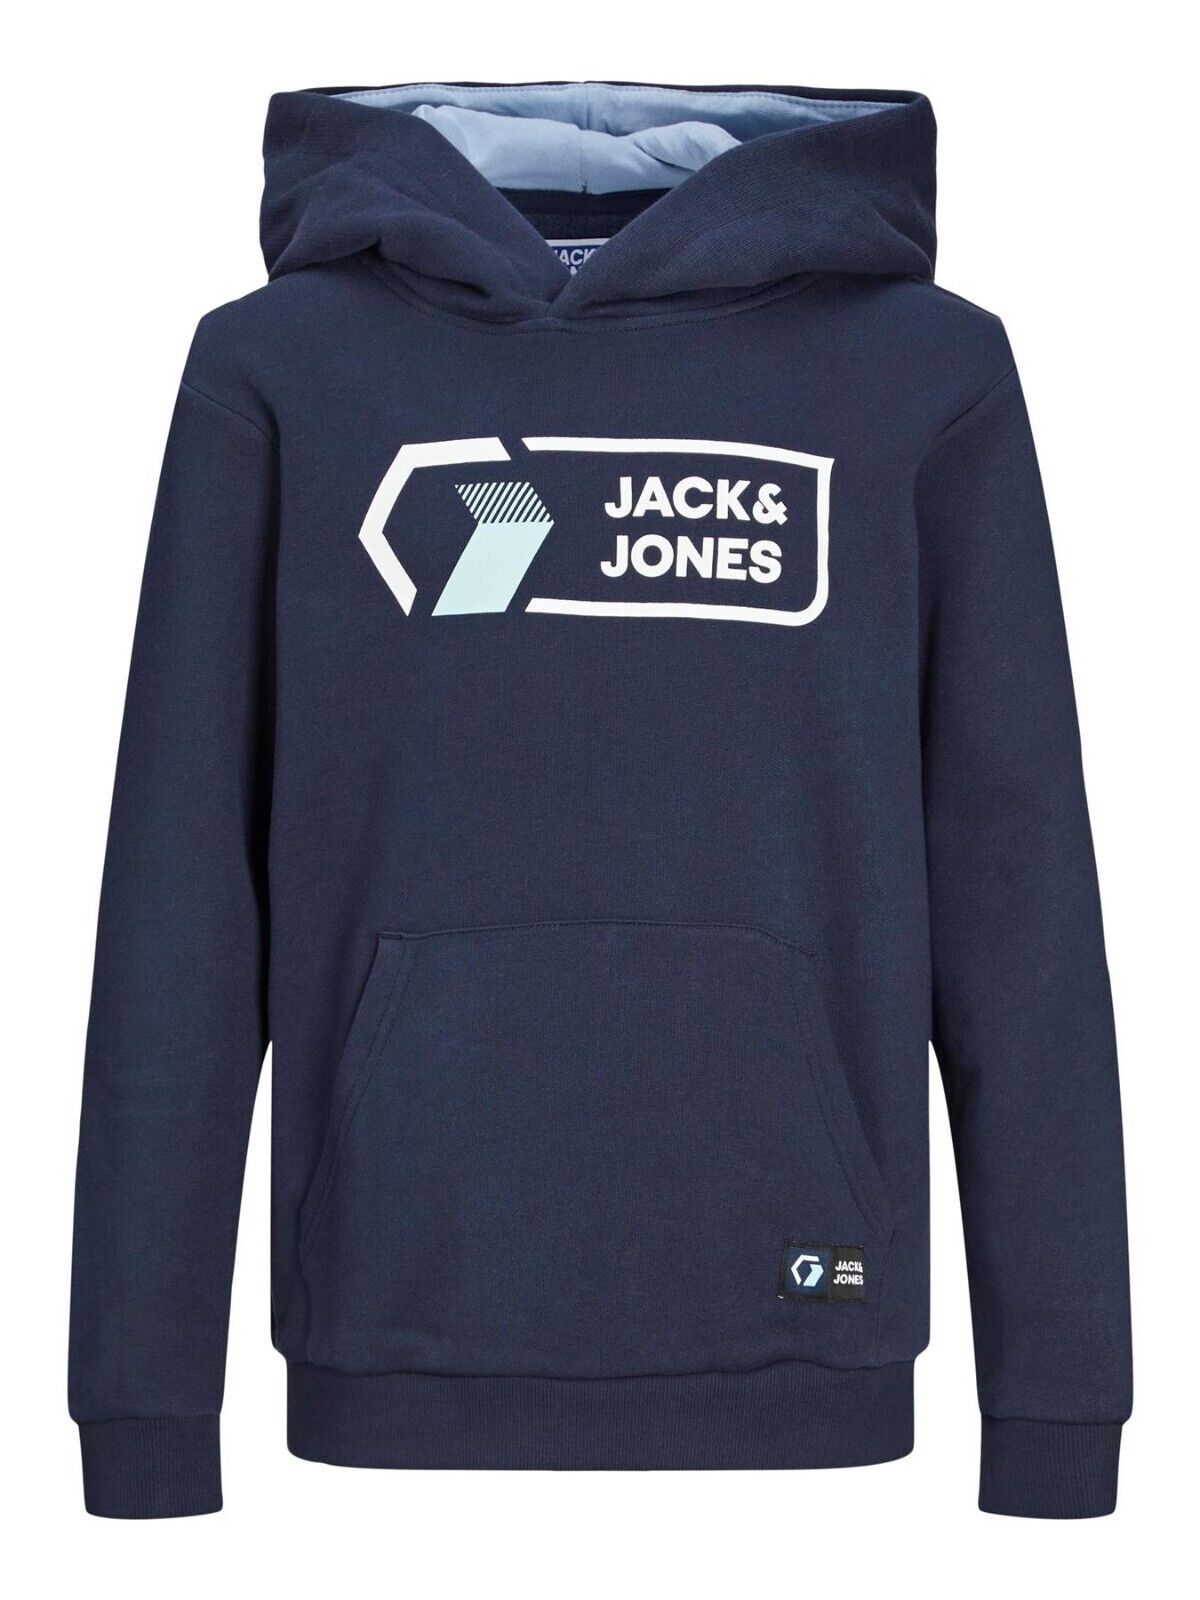 Jack & Jones Kids Boys Pullover Hoodie Logo Printed Warm Winter Hooded Sweat Top